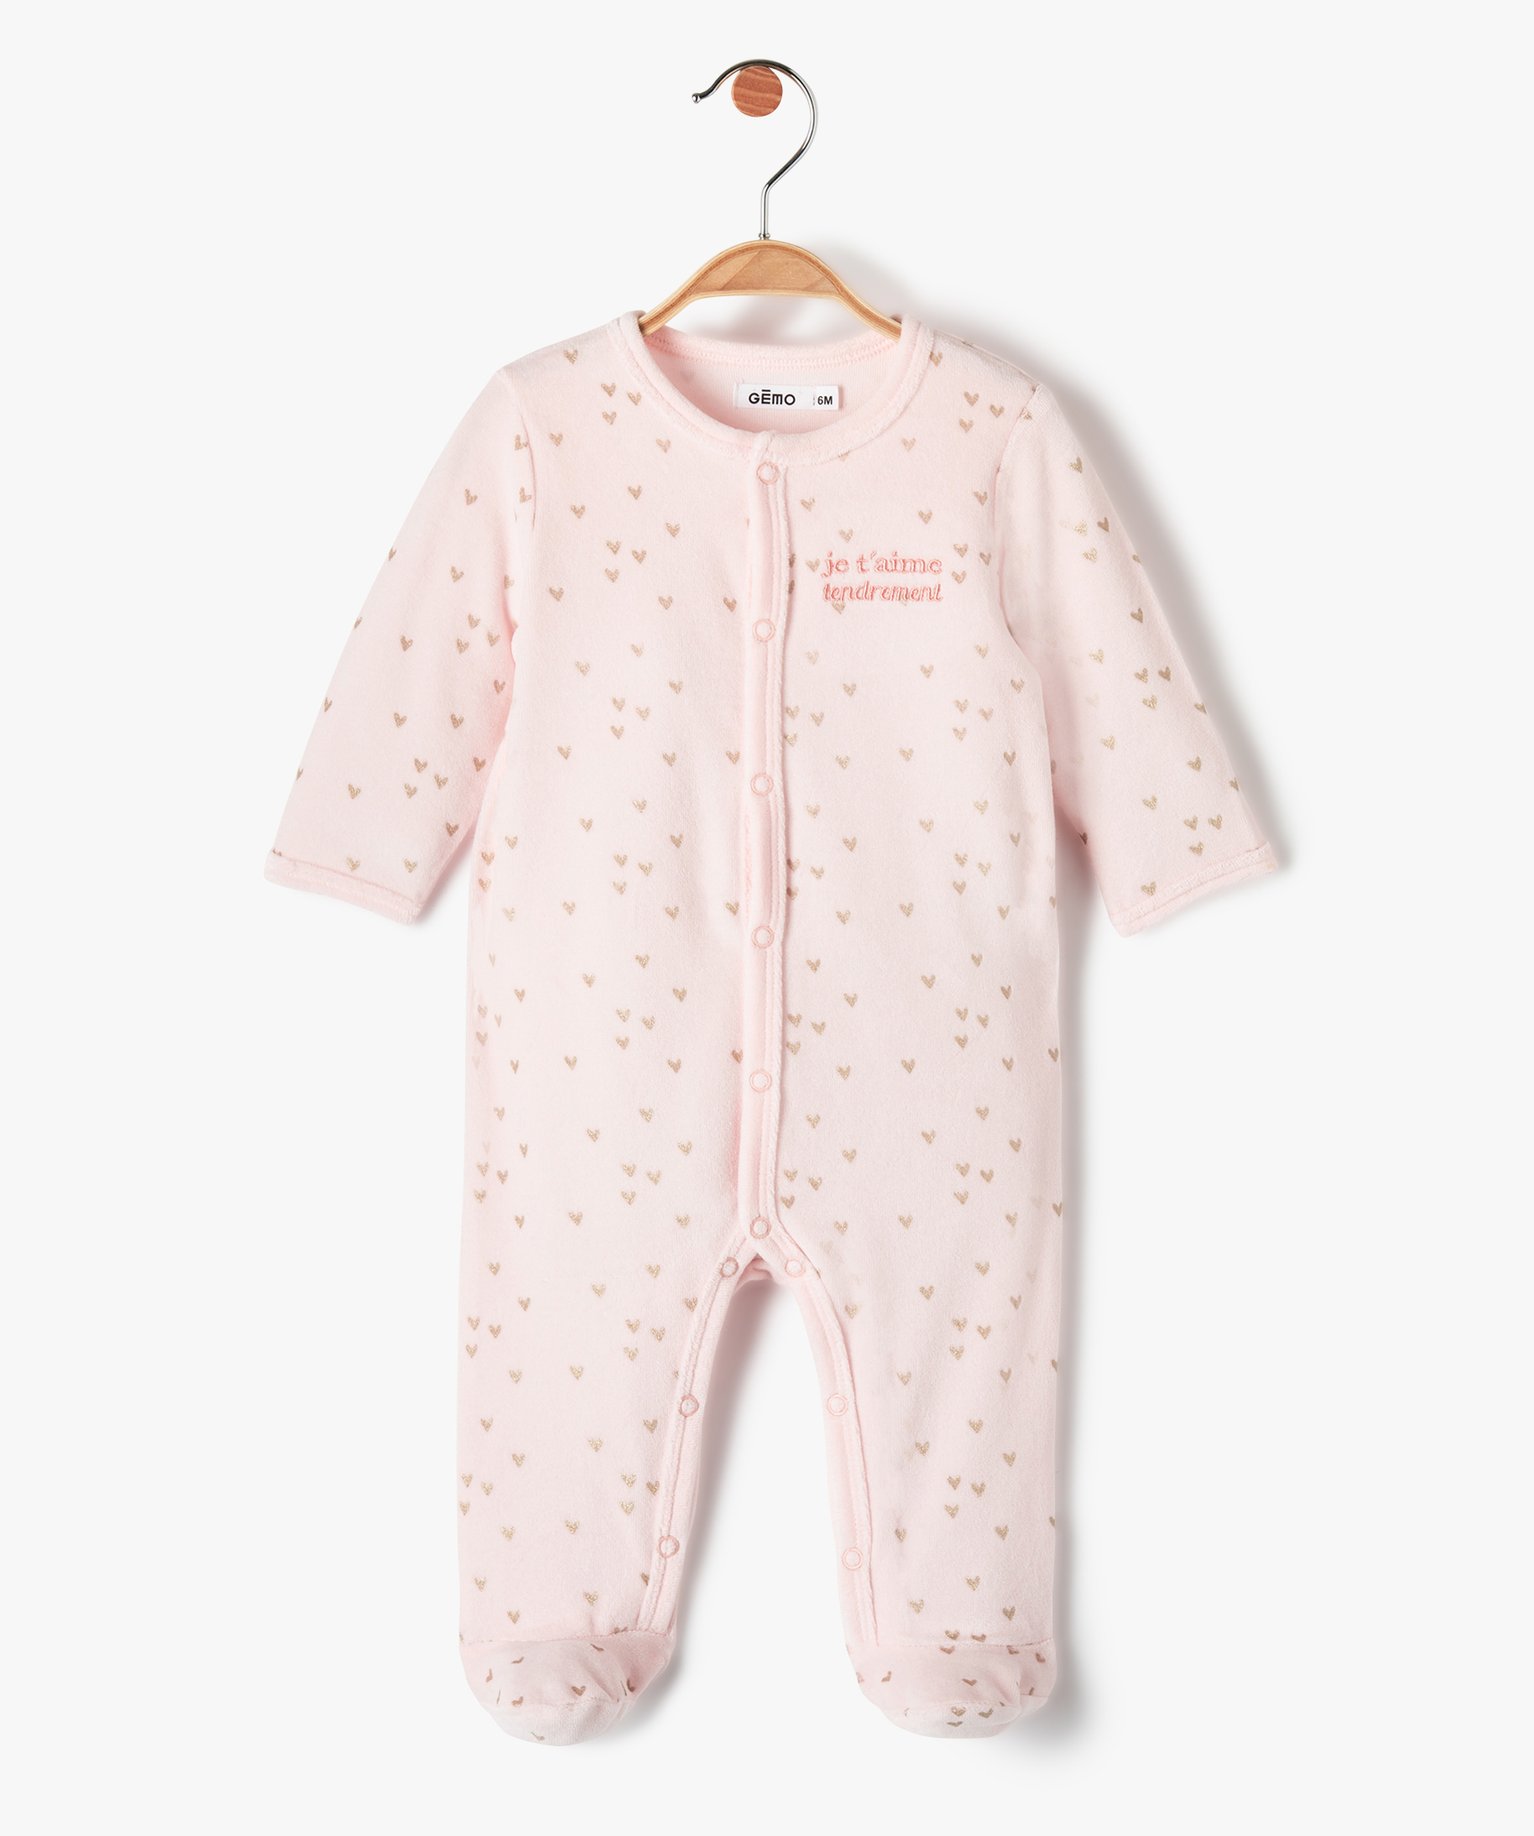 pyjama bebe en velours pastel a cours dores et ouverture ventrale rose